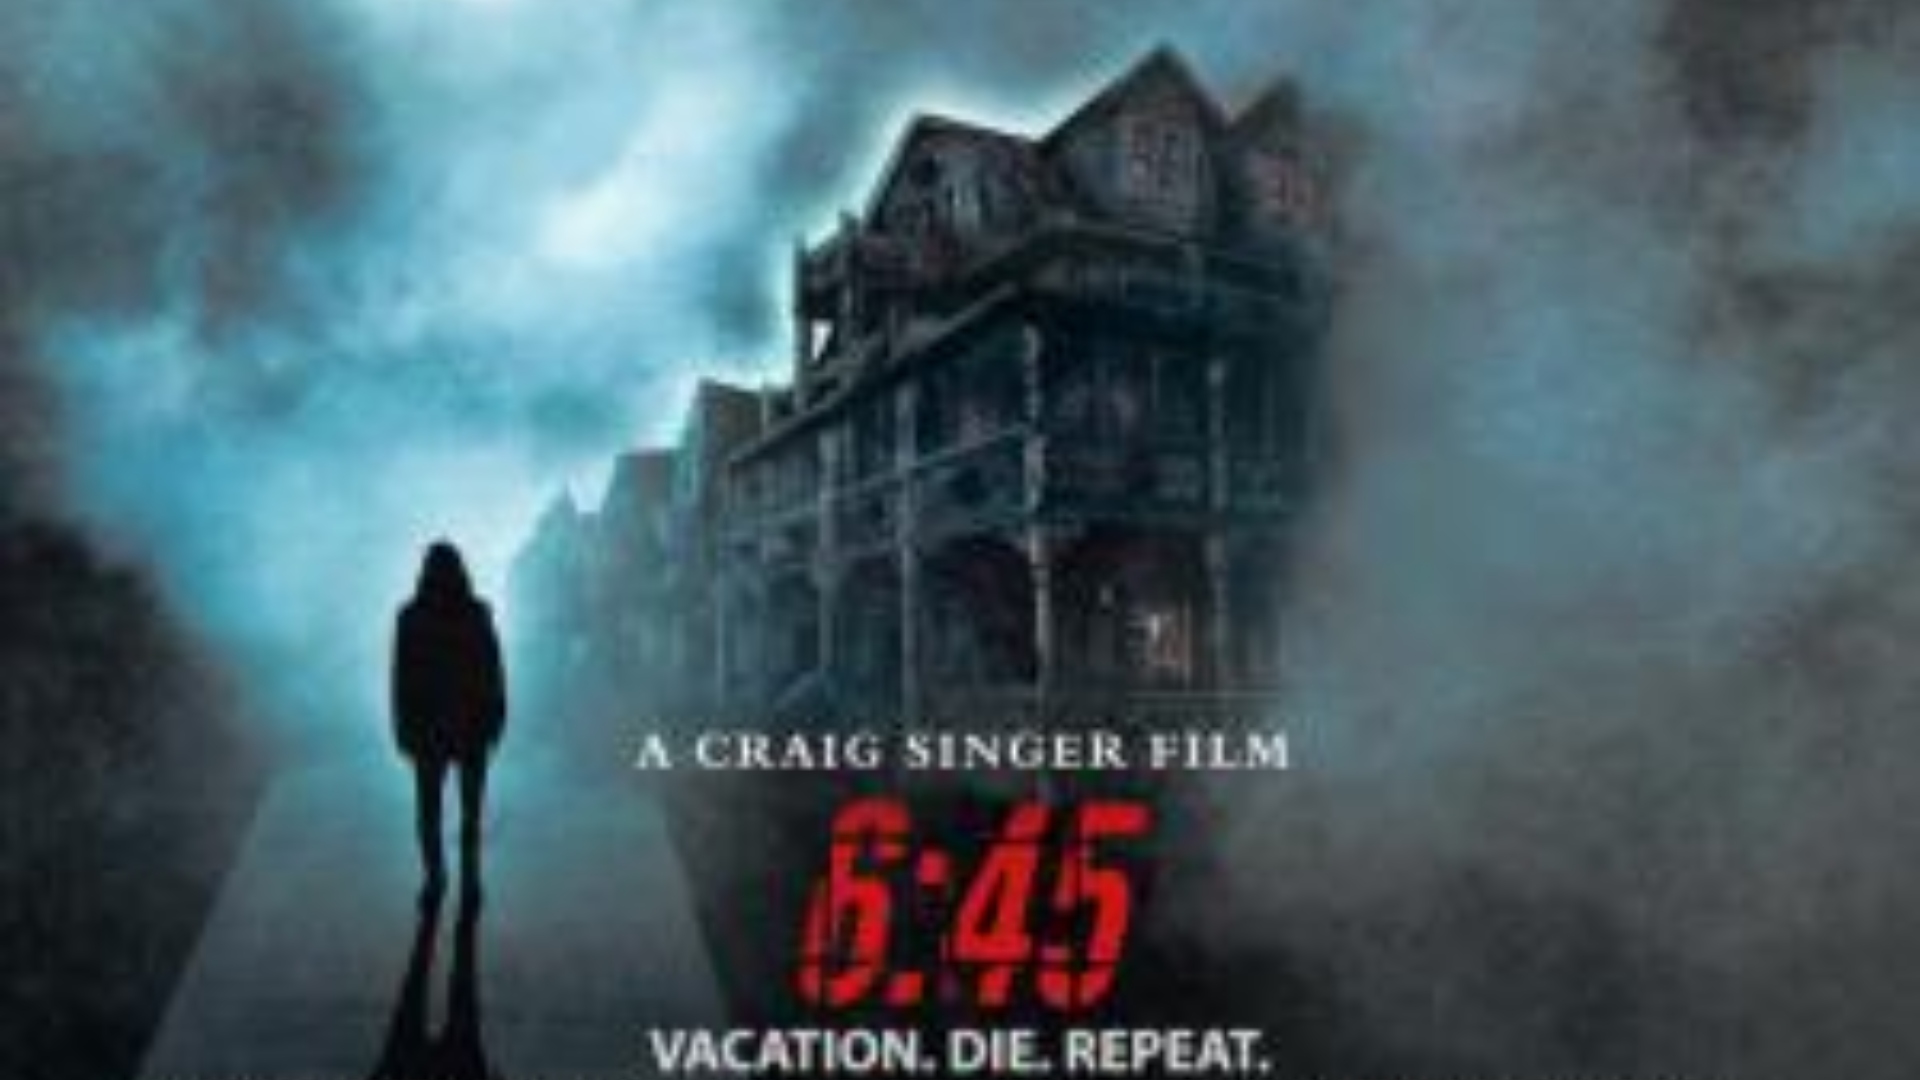 “6:45” la nueva película de horror y suspenso que llega cines